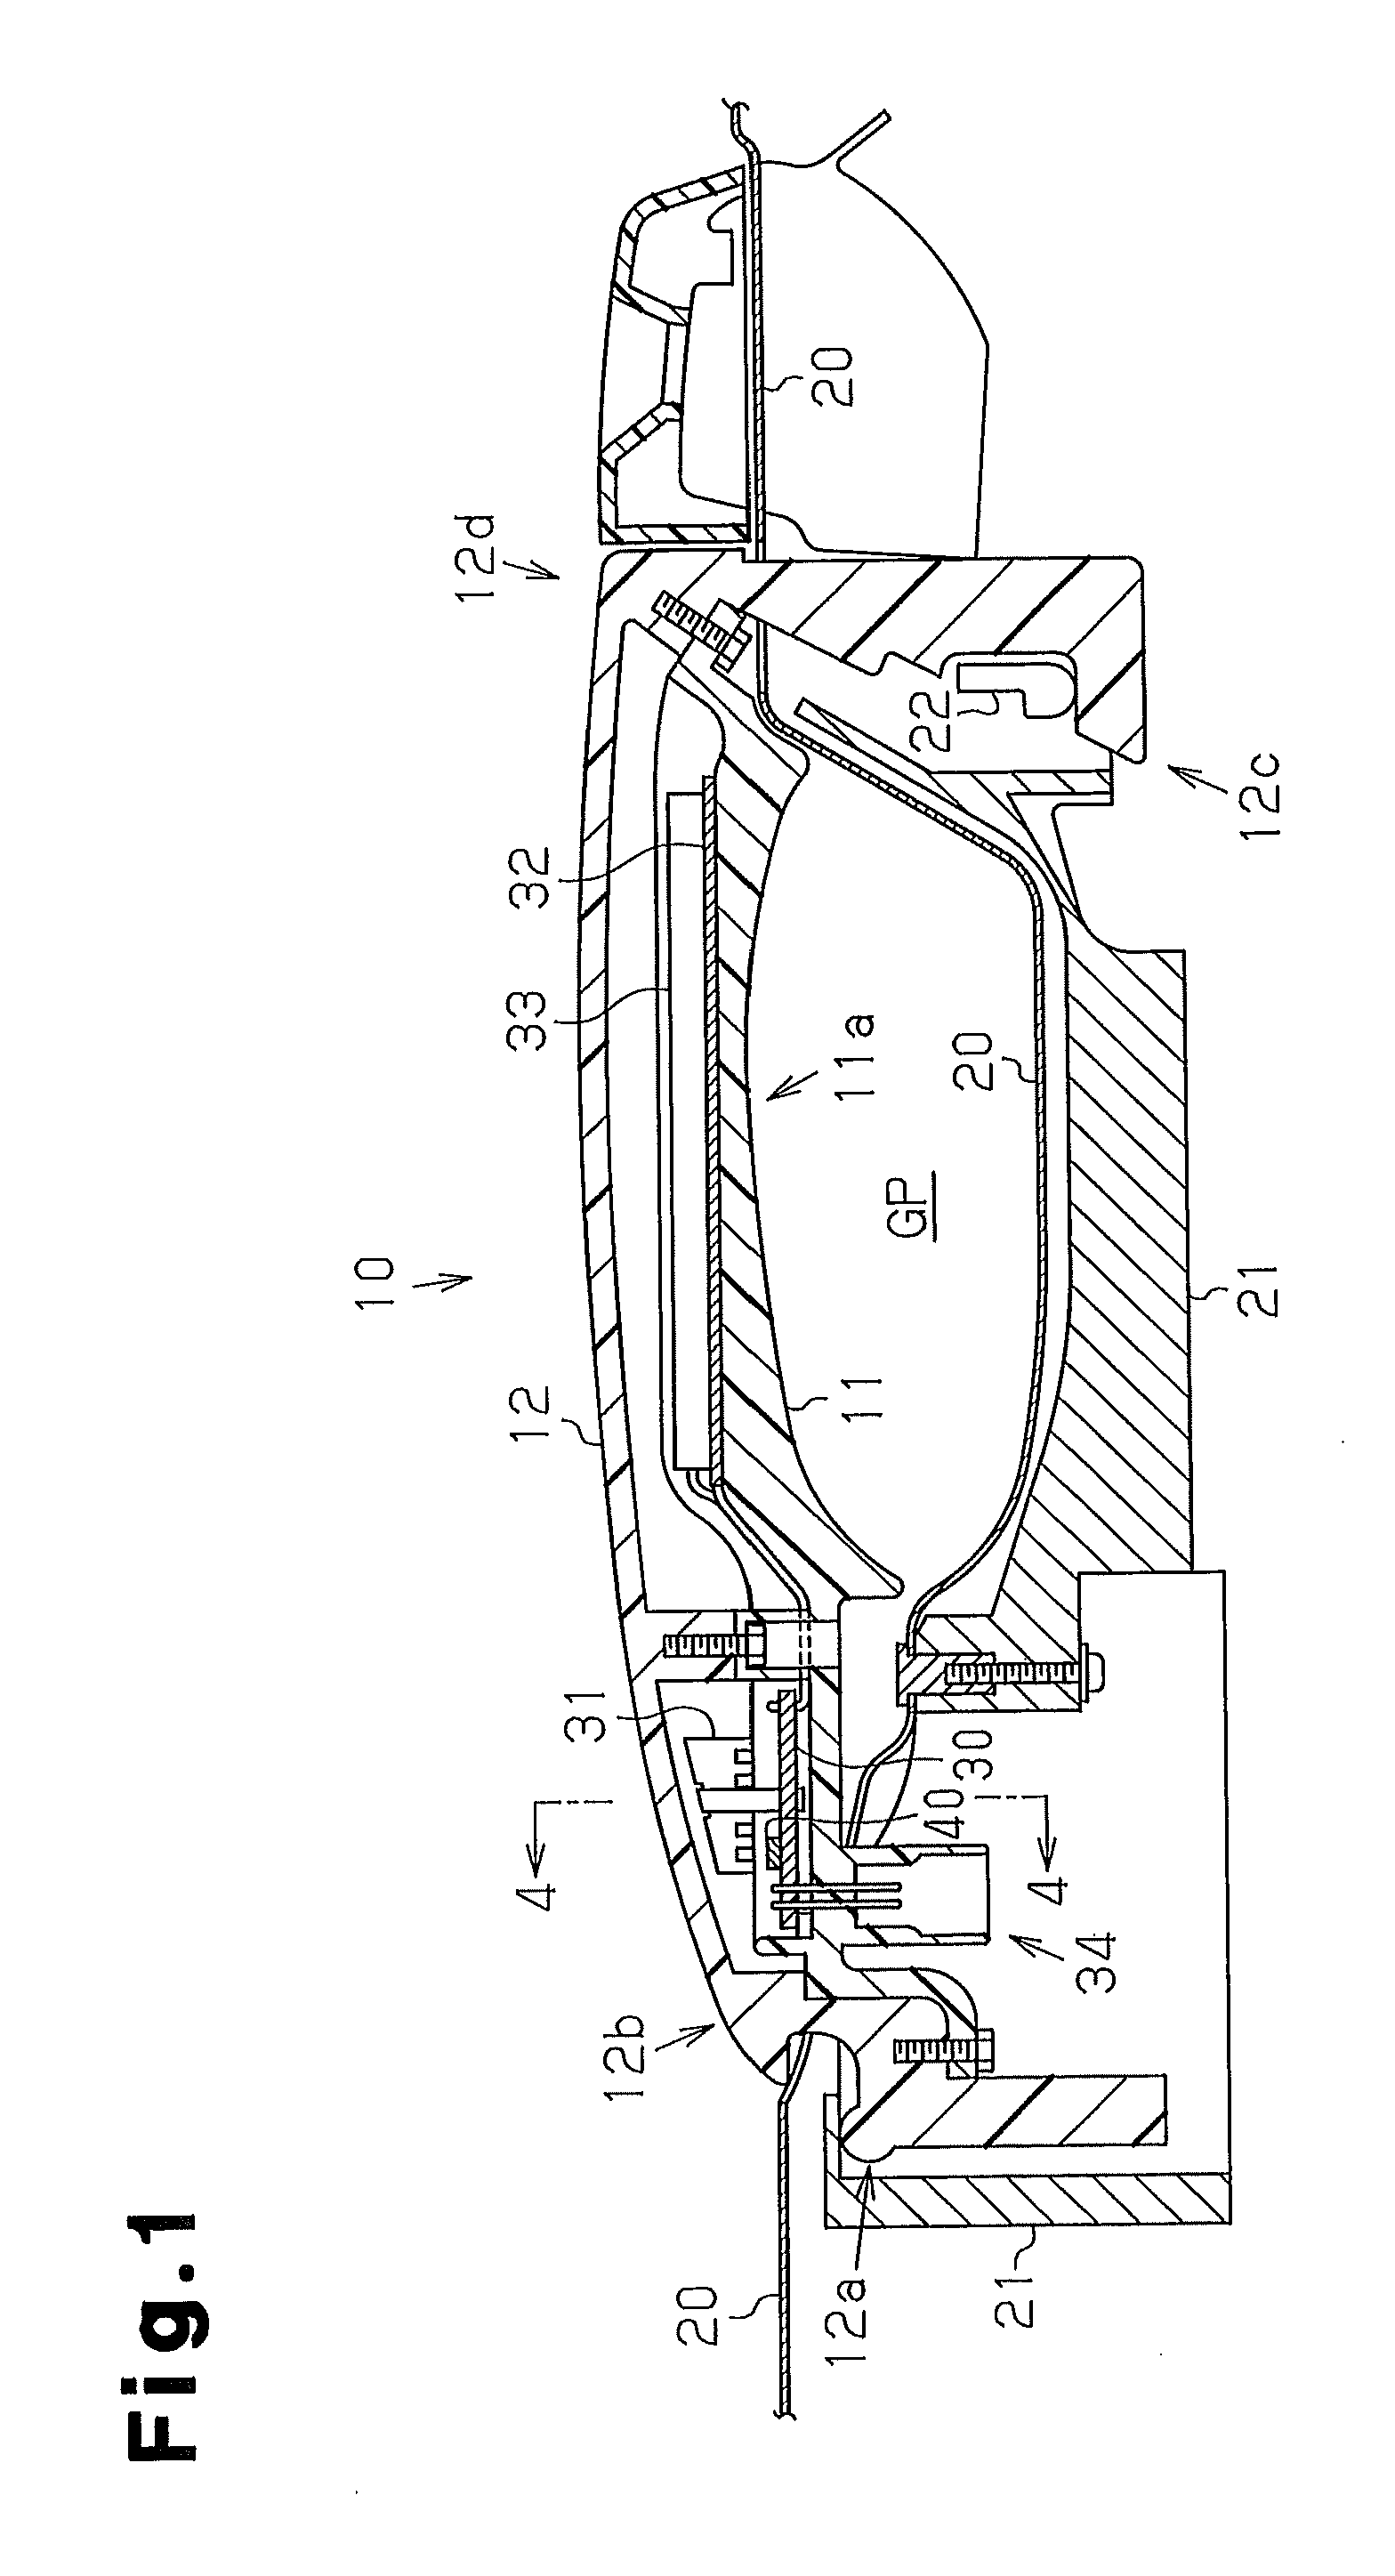 Door handle device